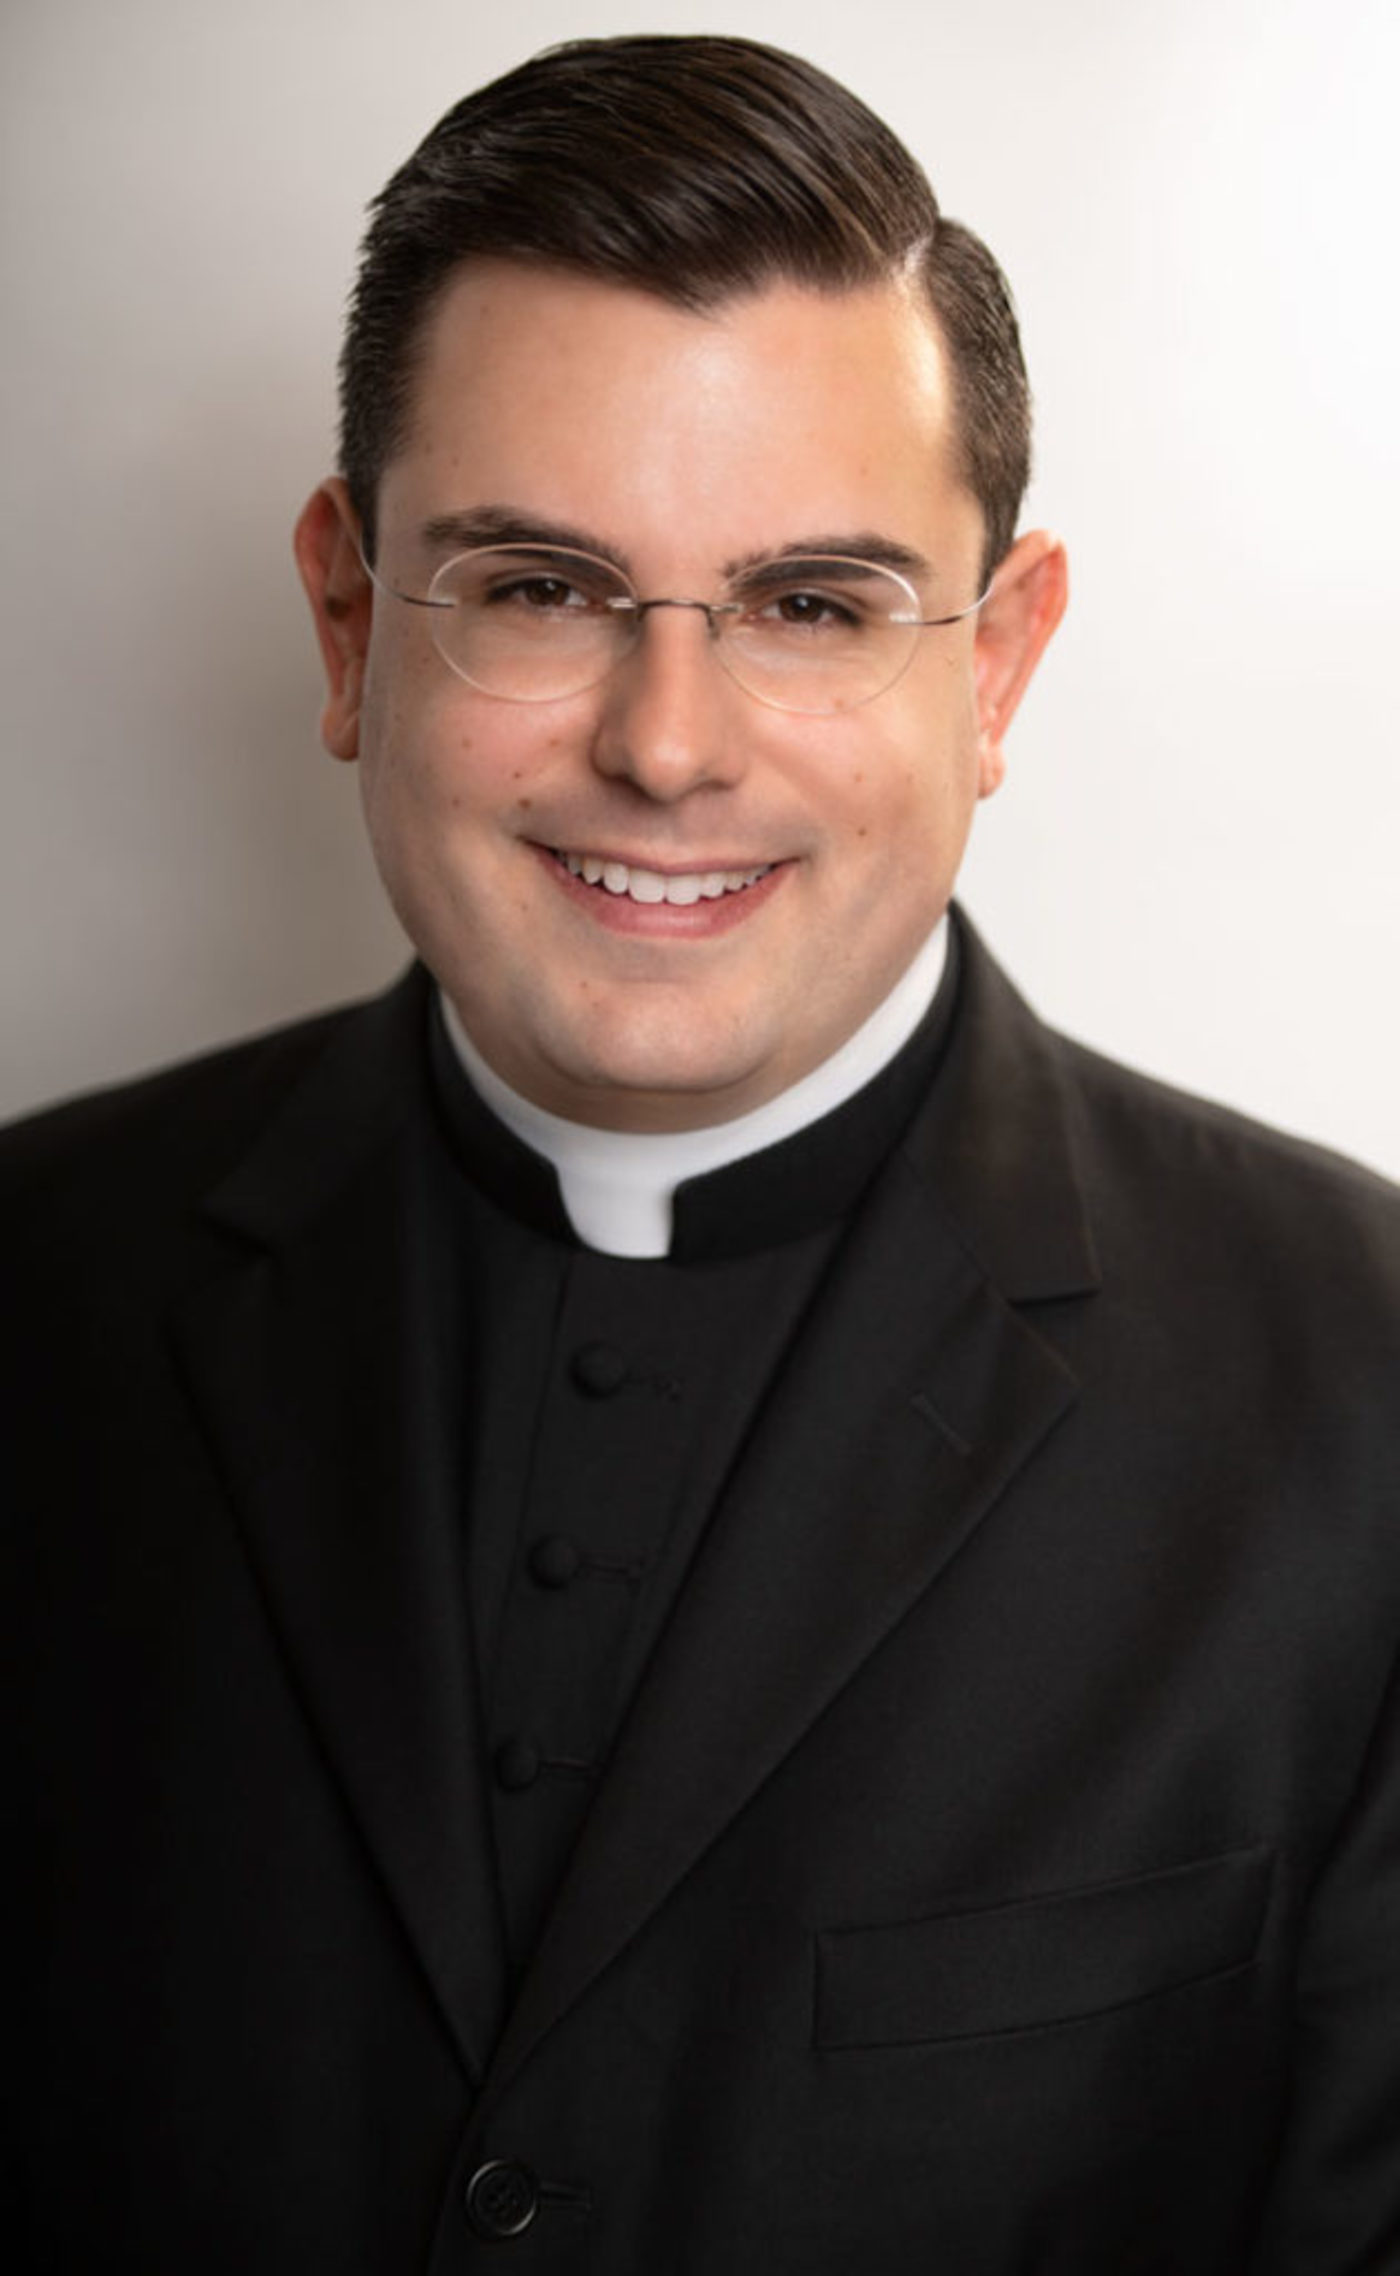 Rev. Michael F. Falce